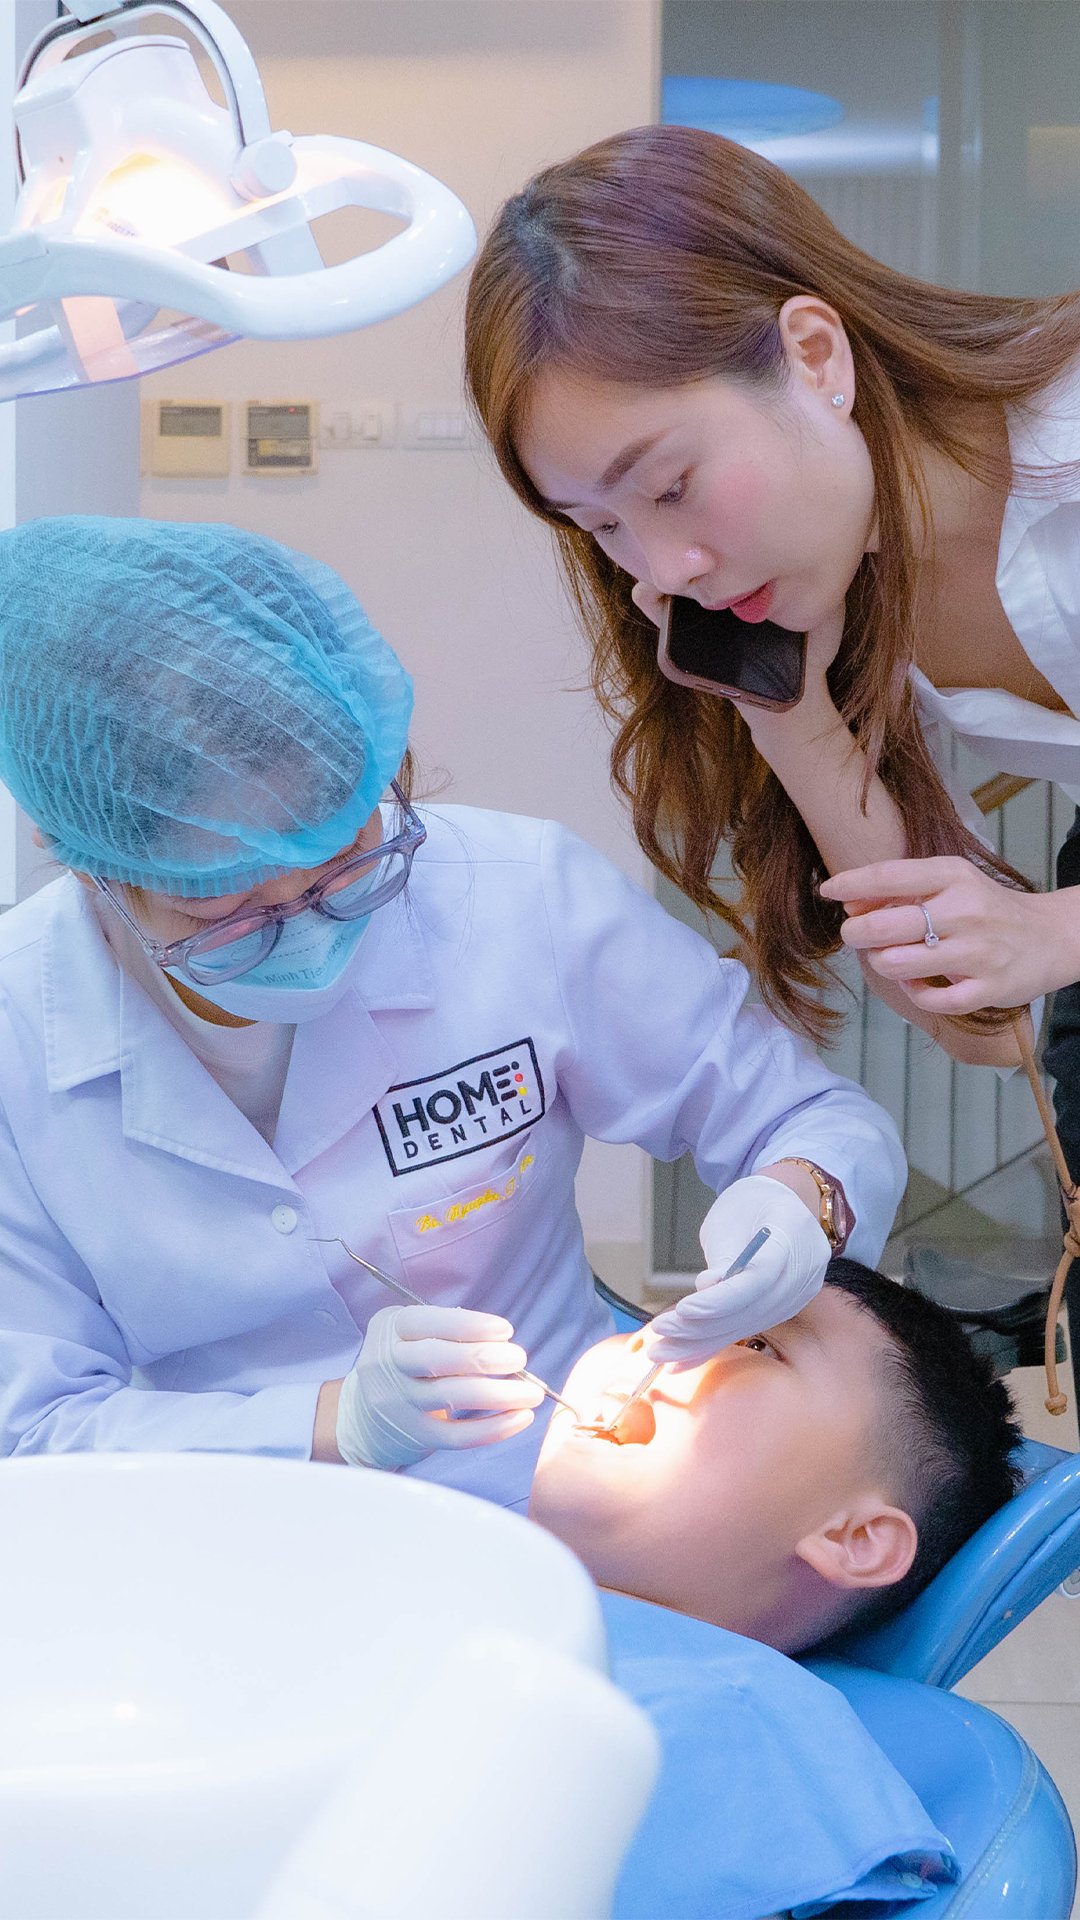 Home Dental - Sự lựa chọn chăm sóc sức khỏe răng miệng hàng đầu tại Việt Nam (alobacsi.vn) - Nha Khoa Home